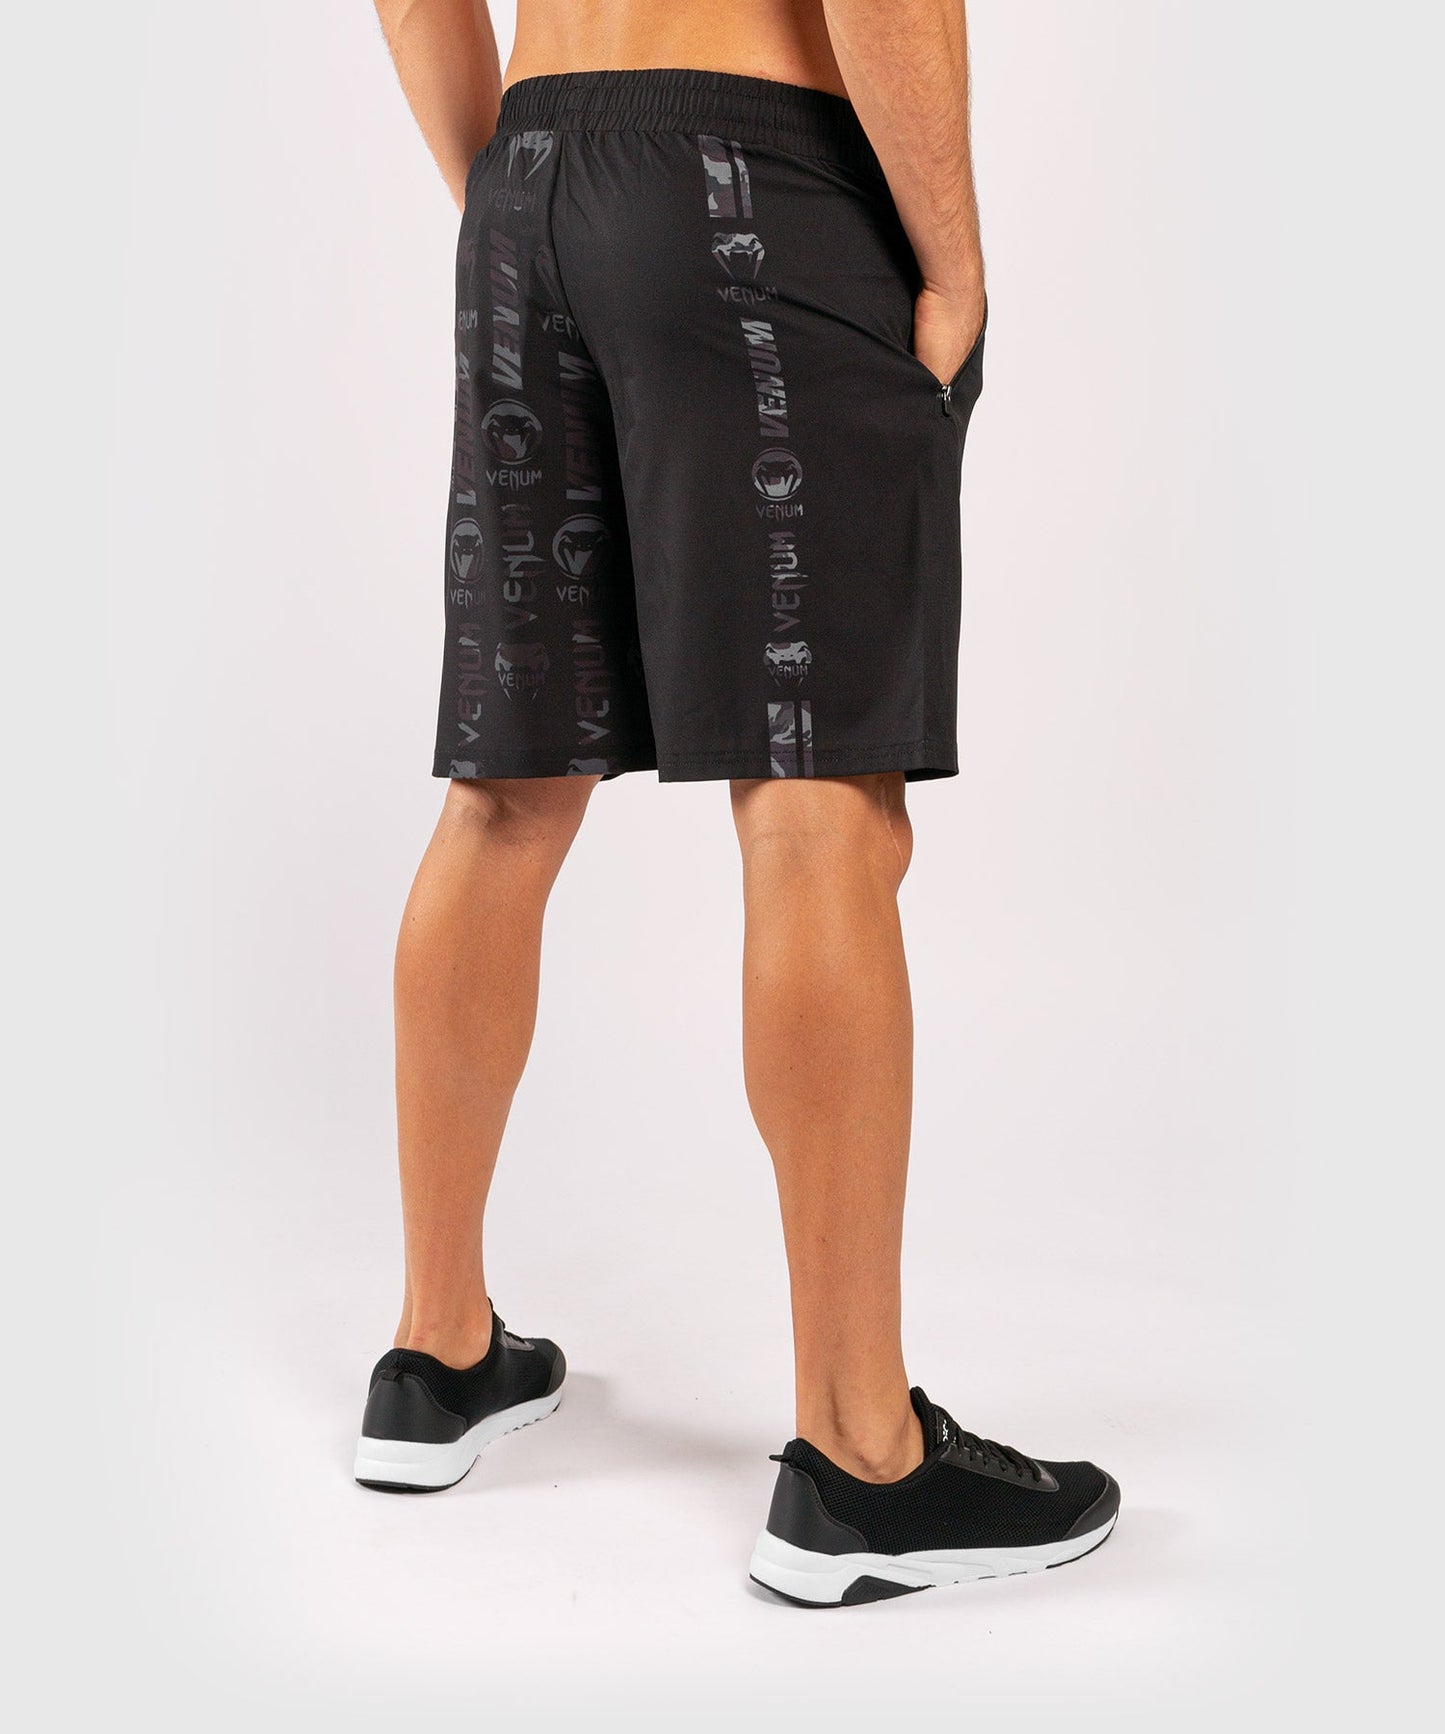 Venum Logos Training Shorts - Black/Urban Camo